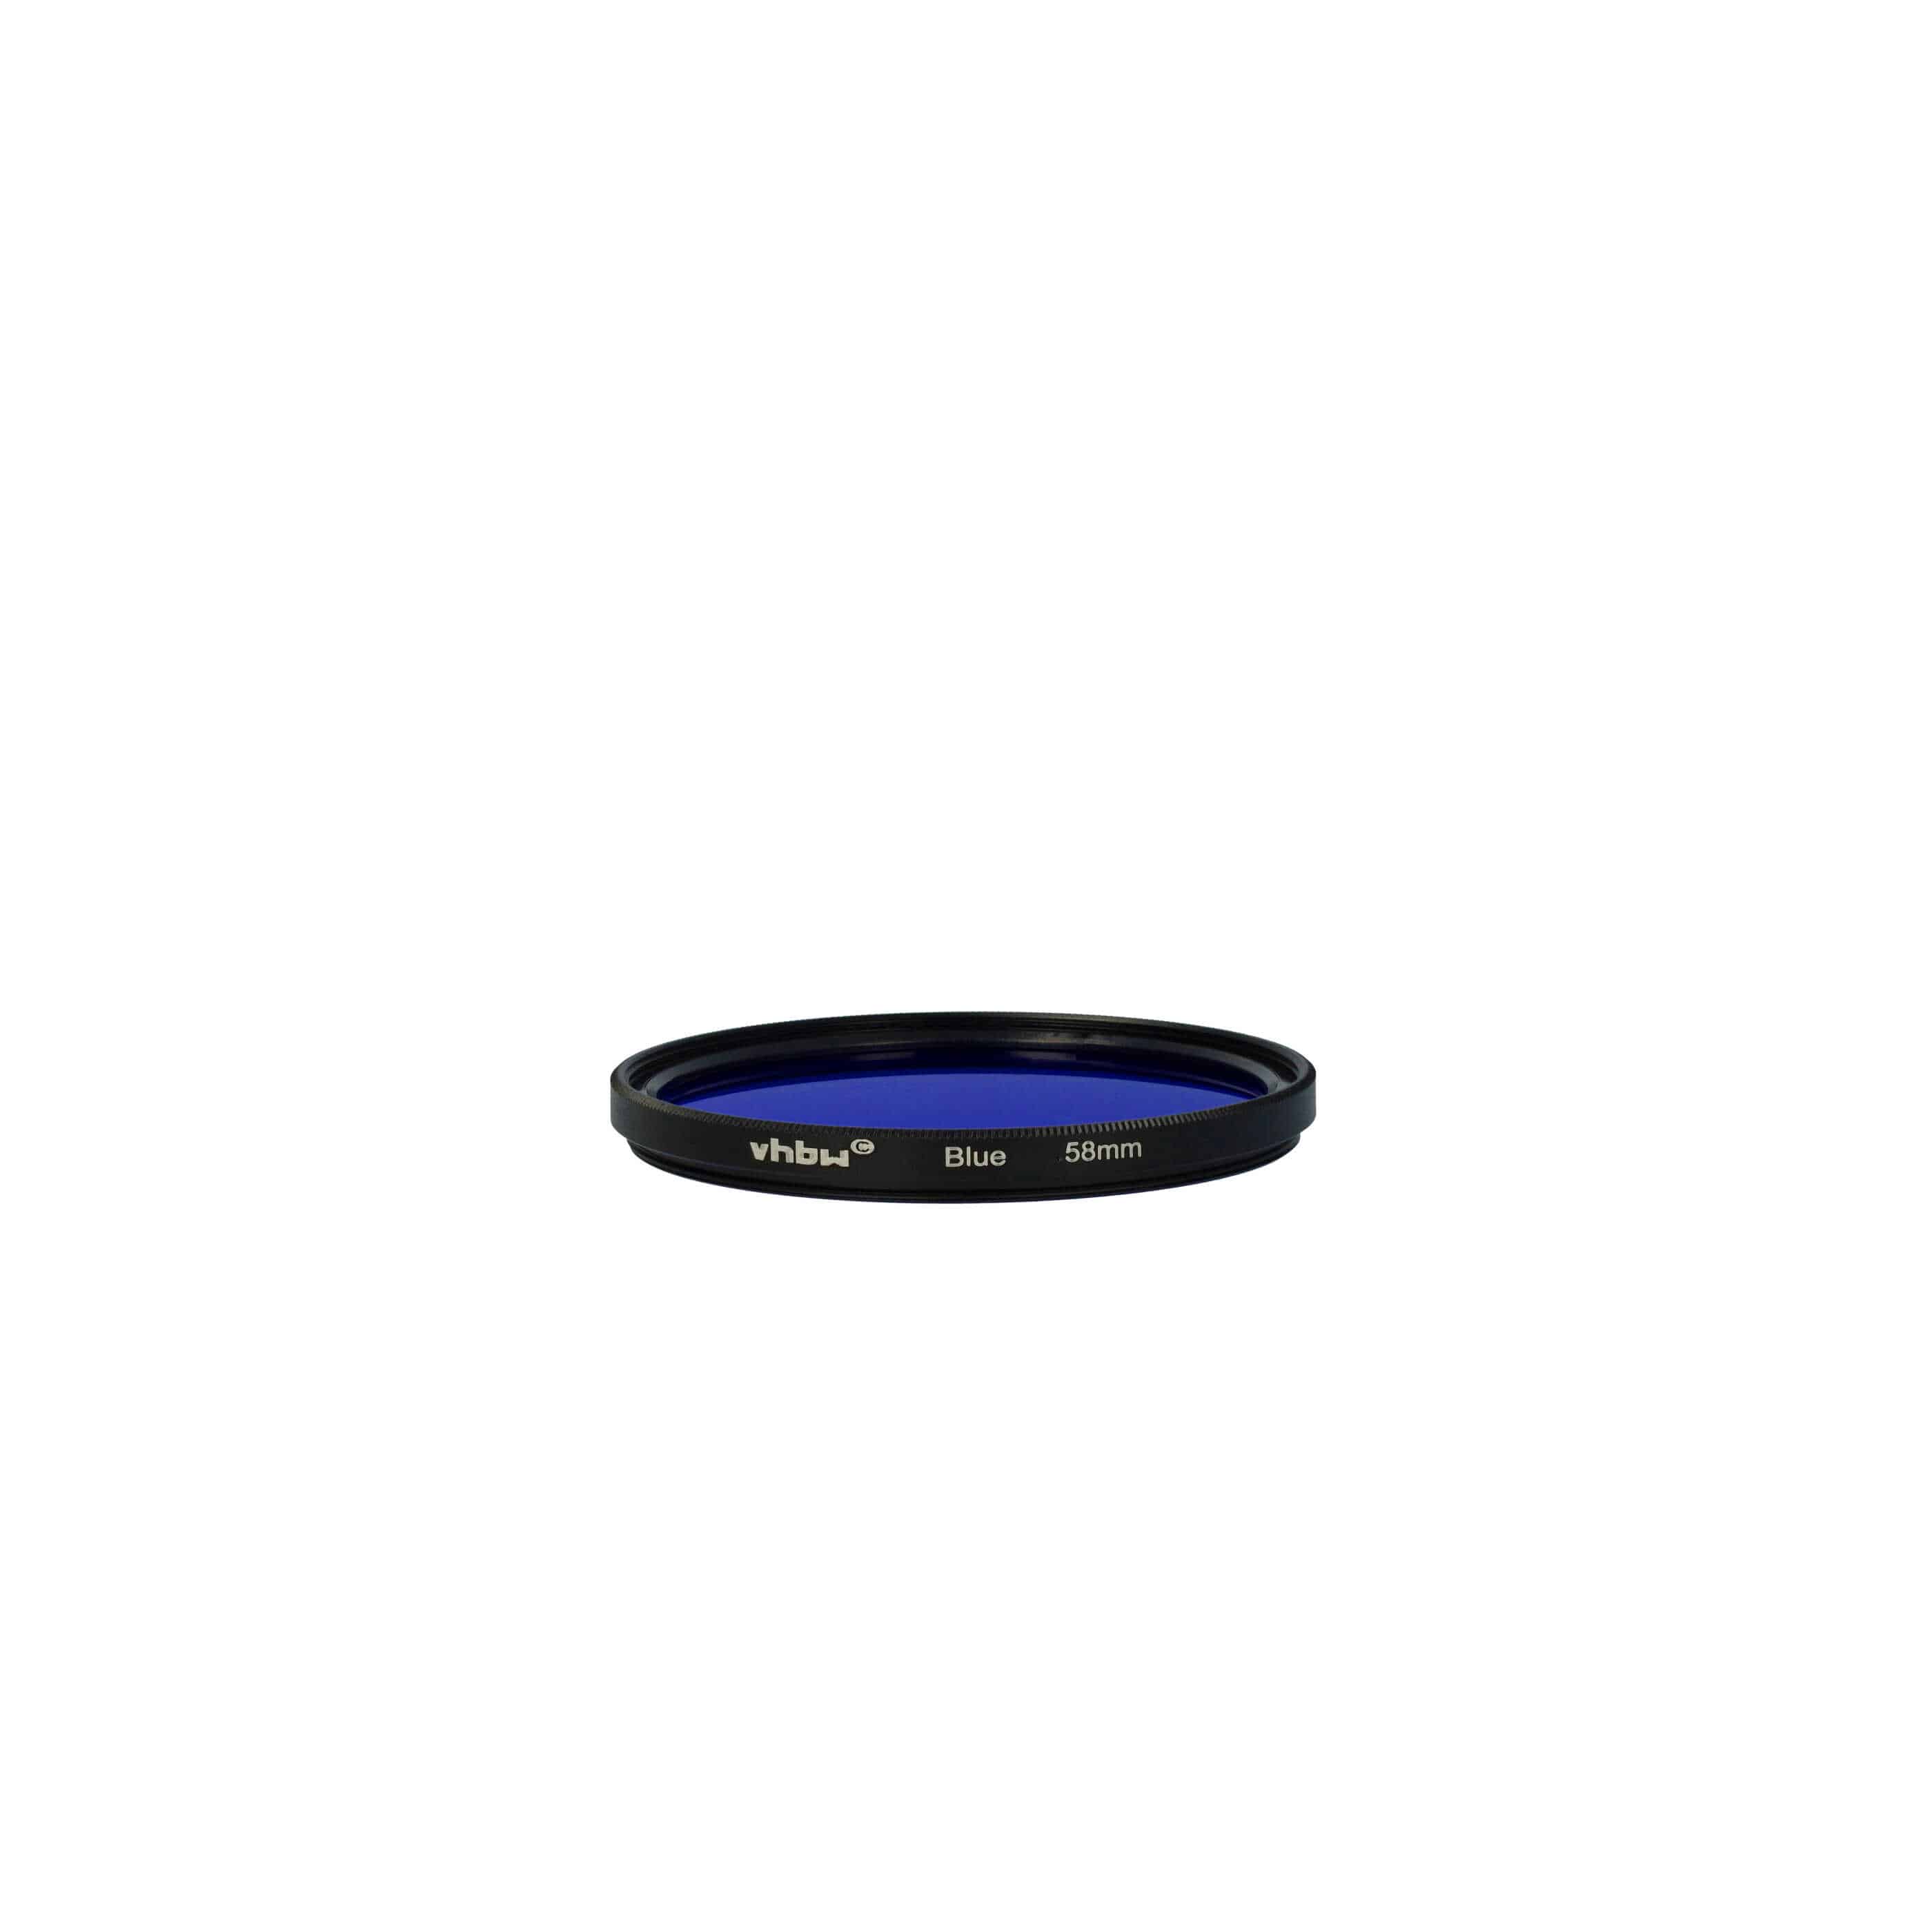 Filtro de color para objetivo de cámara con rosca de filtro de 58 mm - Filtro azul